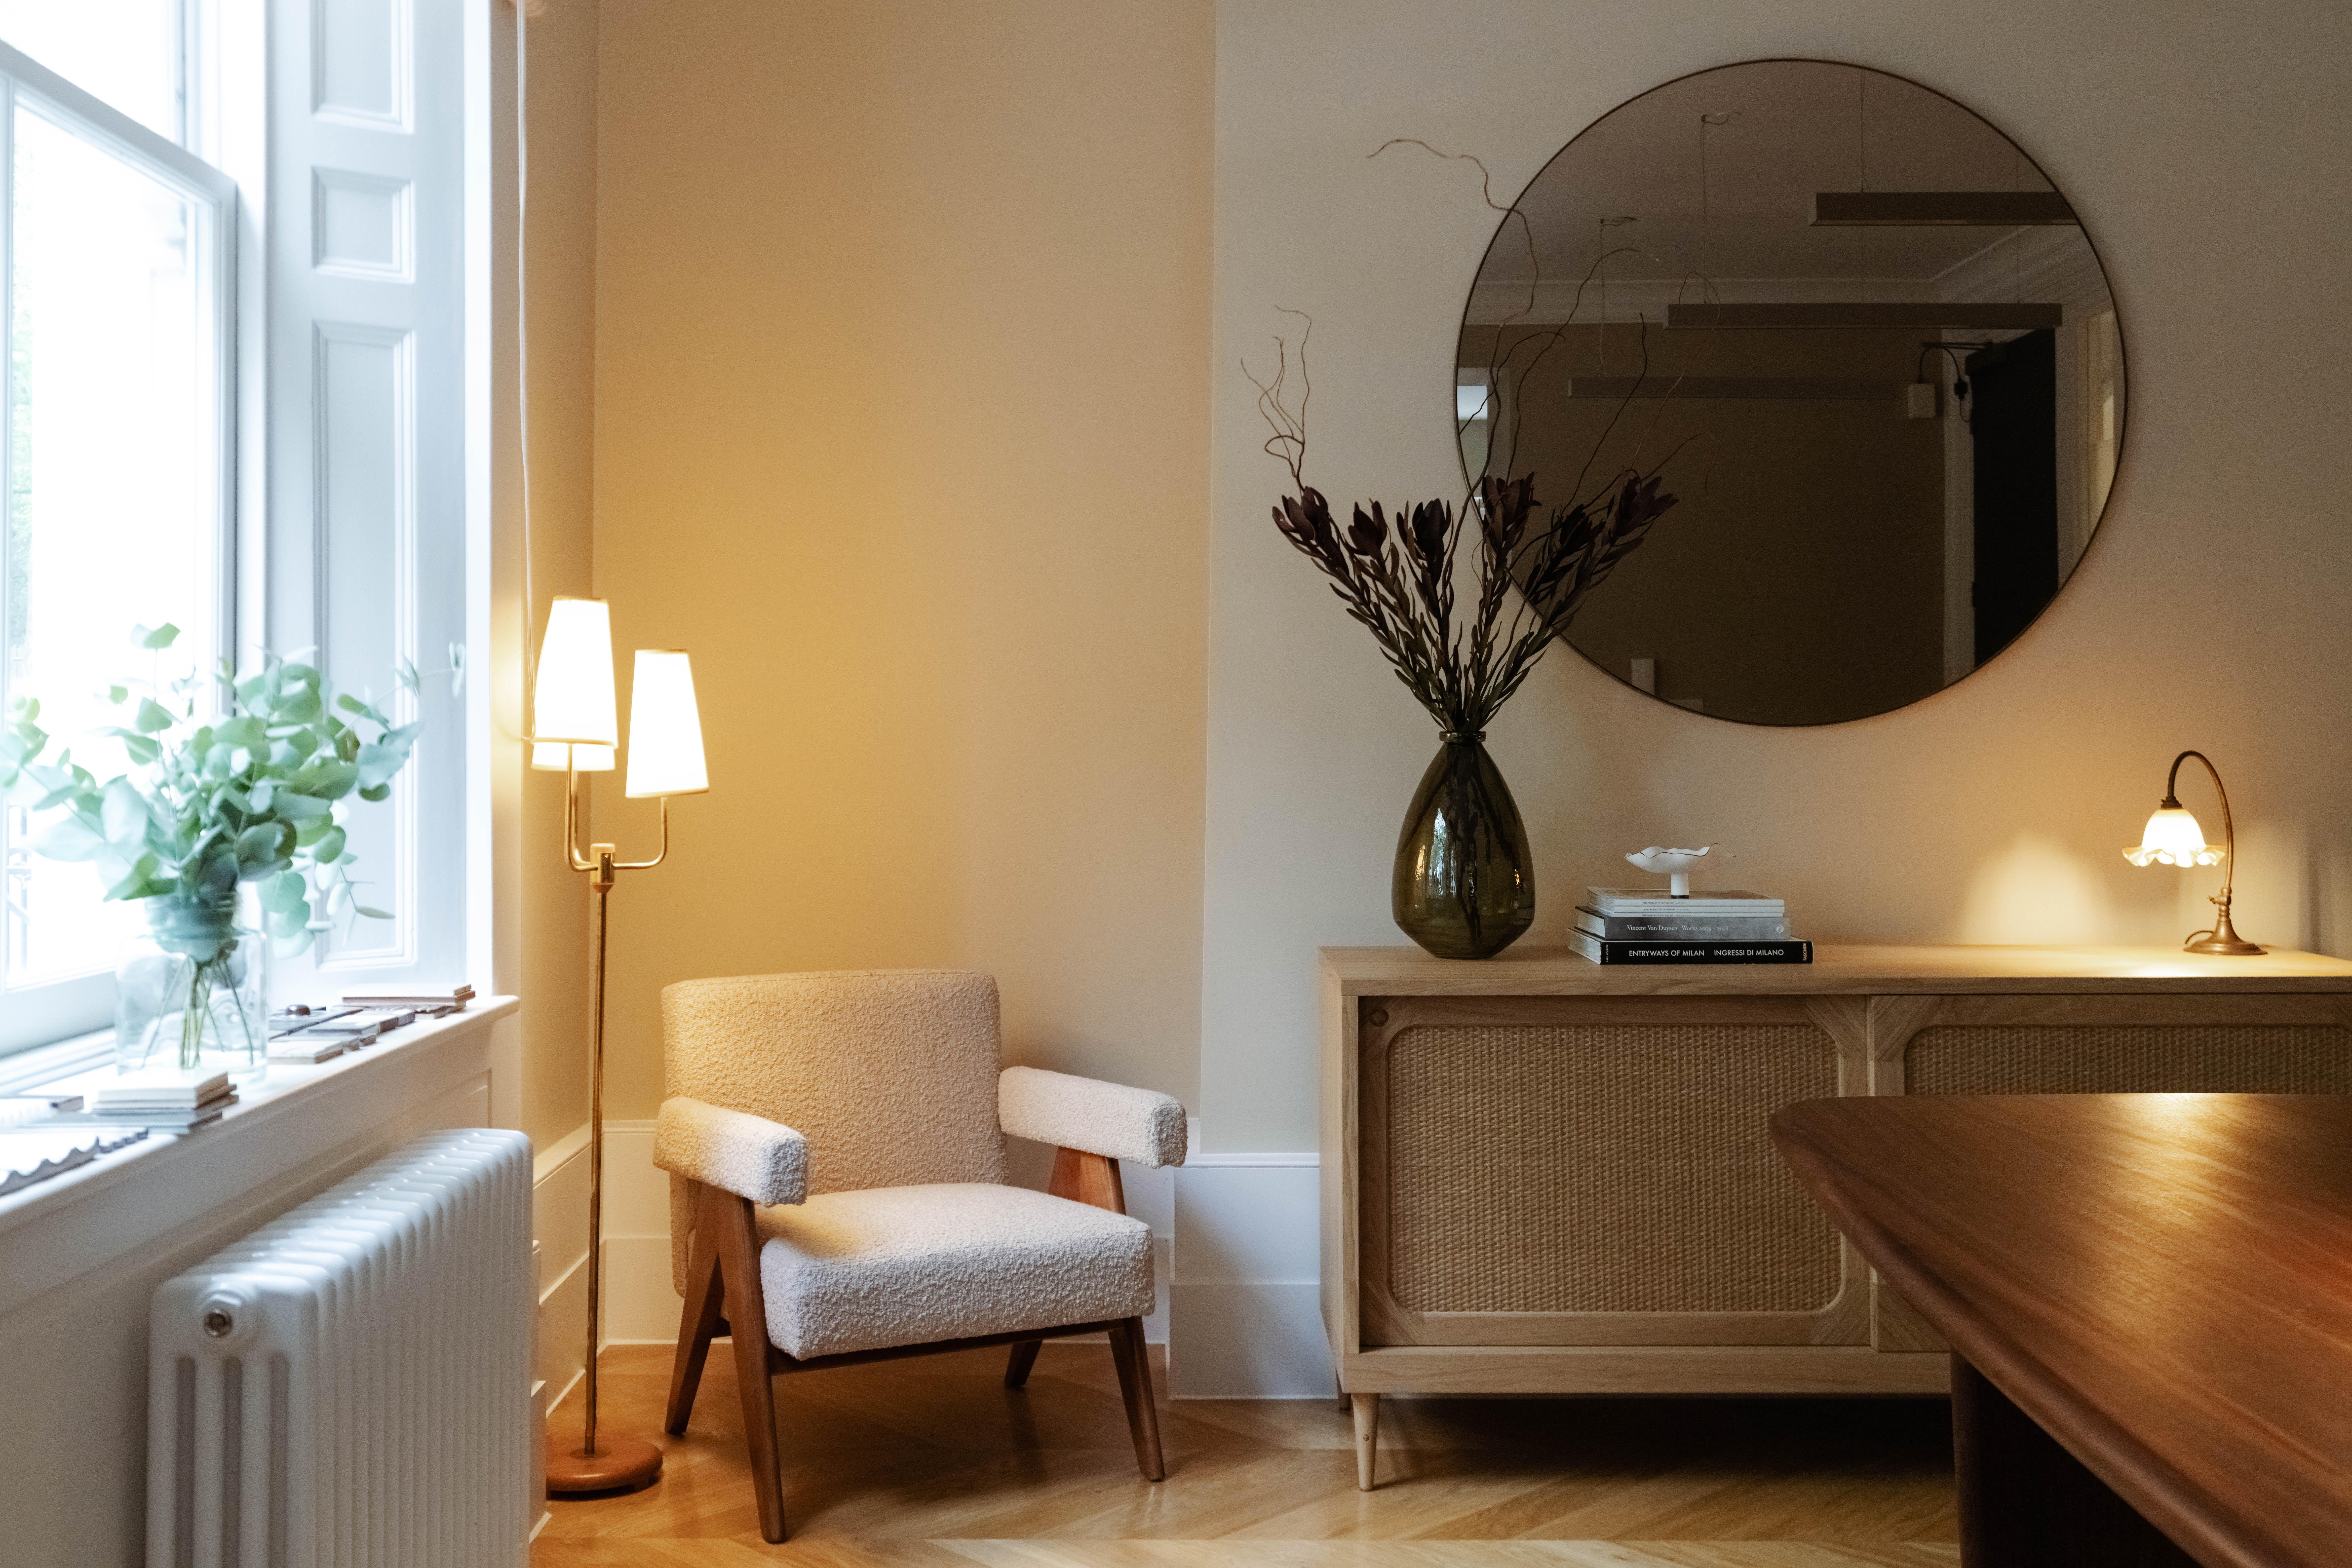 Ein Sideboard aus europäischer Eiche und Rattan, das von Lind + Almond speziell für Sanders, Kopenhagens führendes Luxus-Boutique-Hotel, entwickelt wurde.

Erhältlich in zwei Holztönen, Cognac und Eiche Natur. Auf Bestellung in Europa handgefertigt.